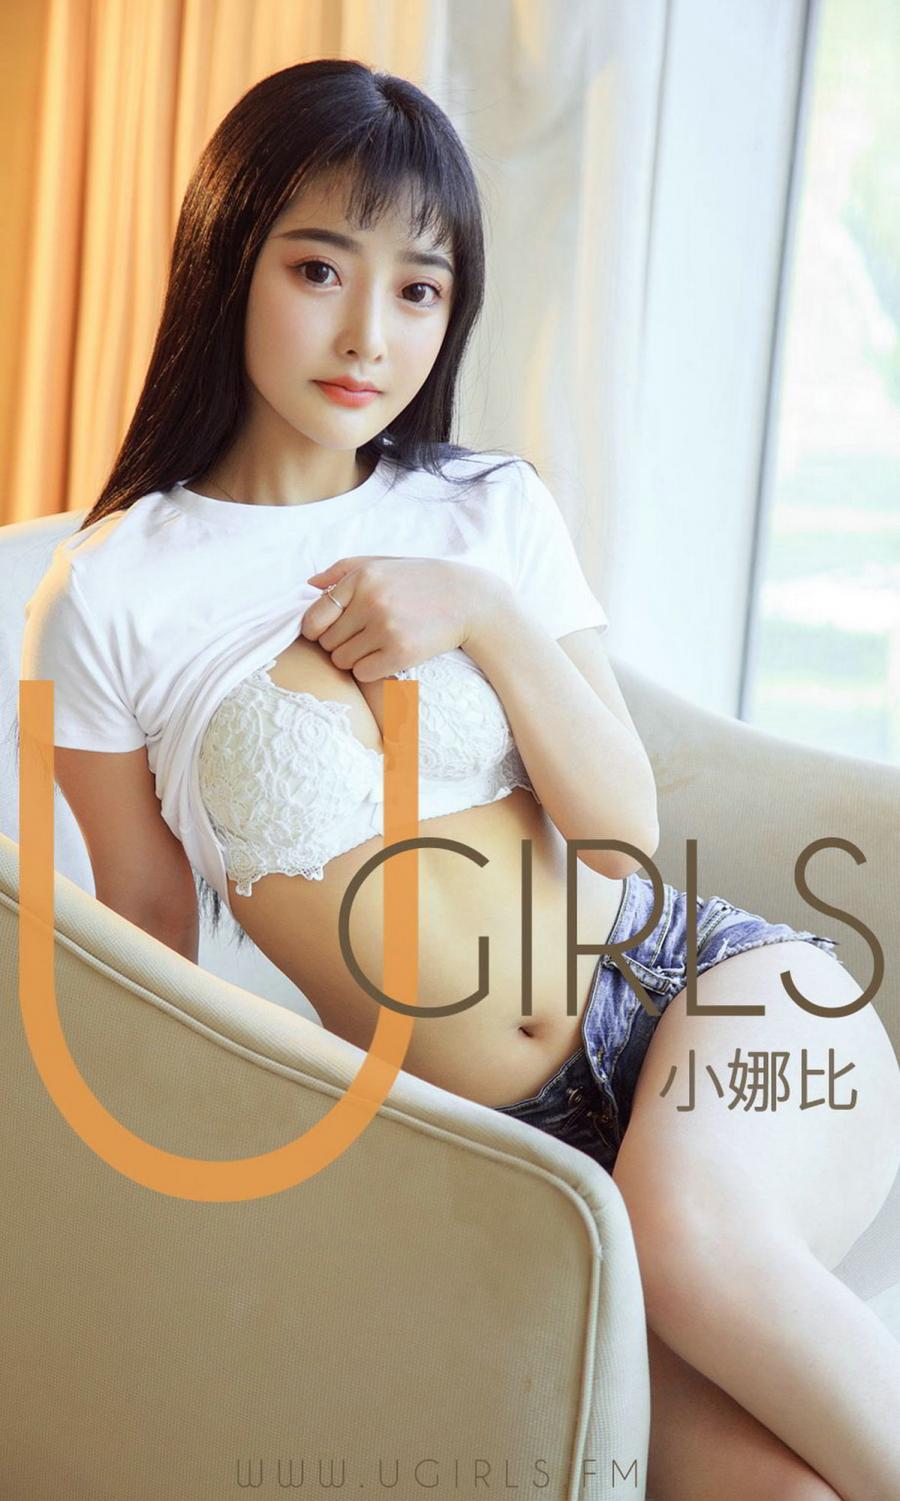 Ugirls App Vol. 1408 Xiao Na Bi